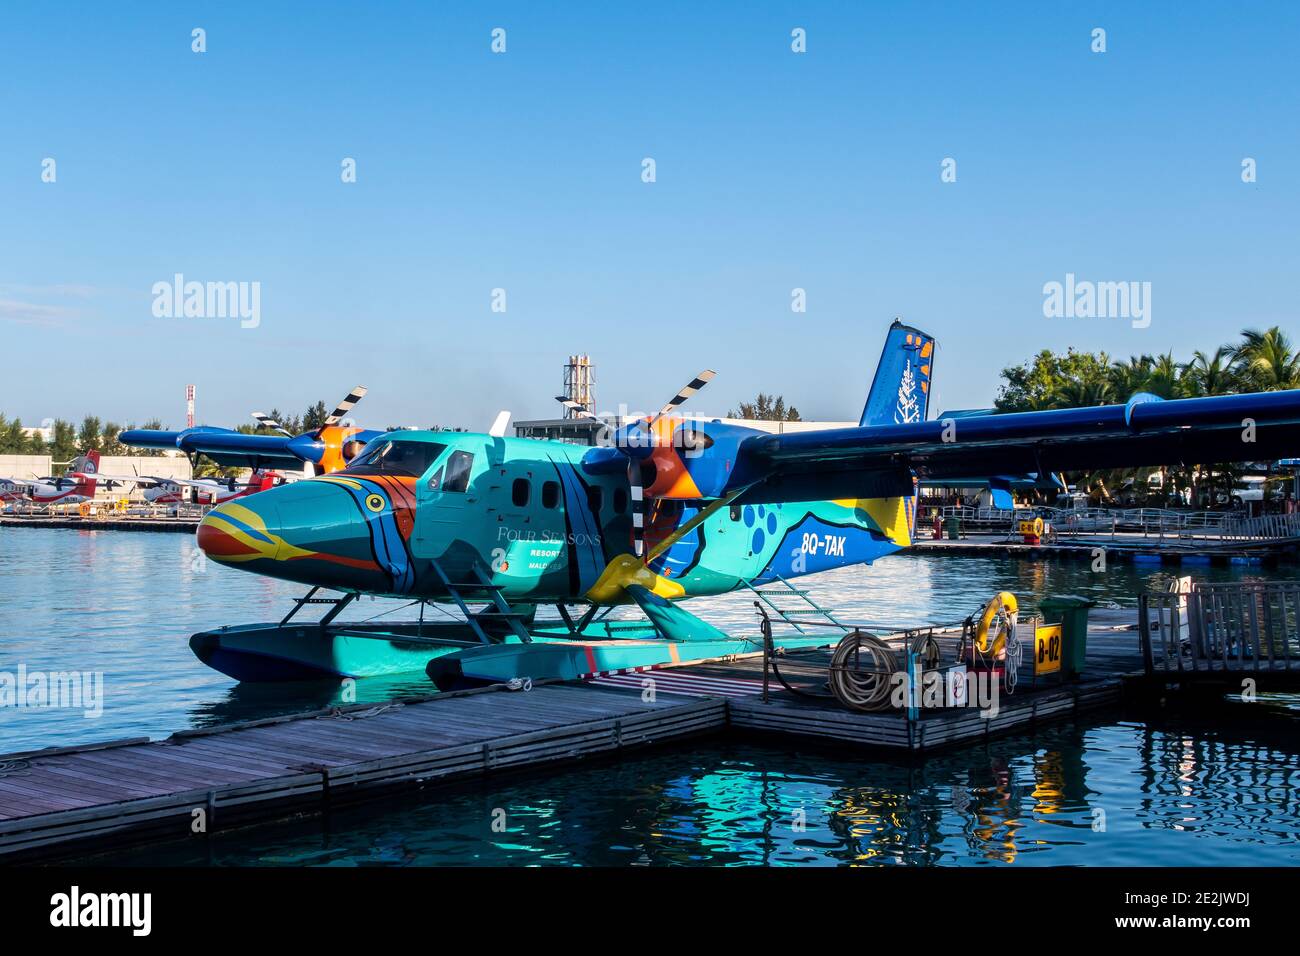 Homme, Maldives, 20.11.2020. TRANS Maldivian Airways hydravion coloré Twin Otter série 400 amarré au terminal d'hydravion, peinture four Seasons Resort. Banque D'Images